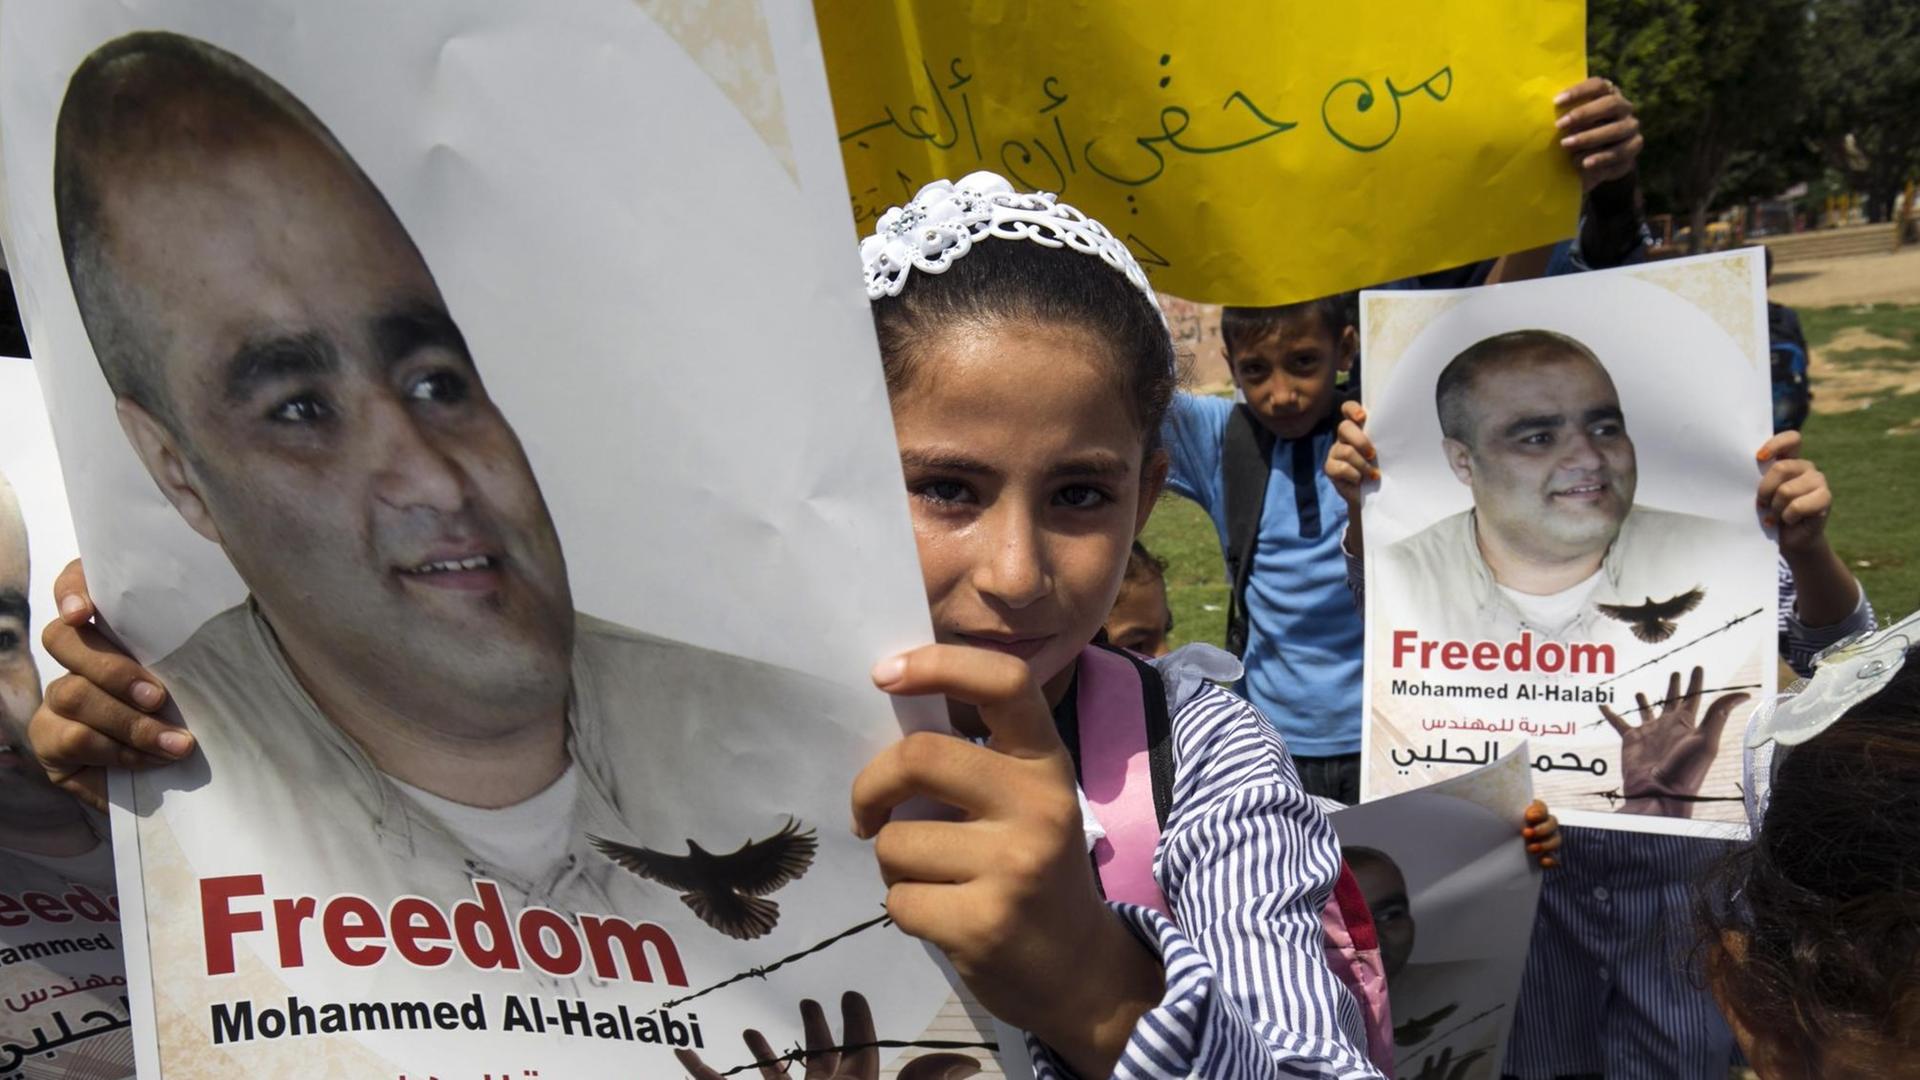 Palästinensische Kinder mit Plakaten, auf denen steht: "Freiheit für Mohammed al-Halabi".